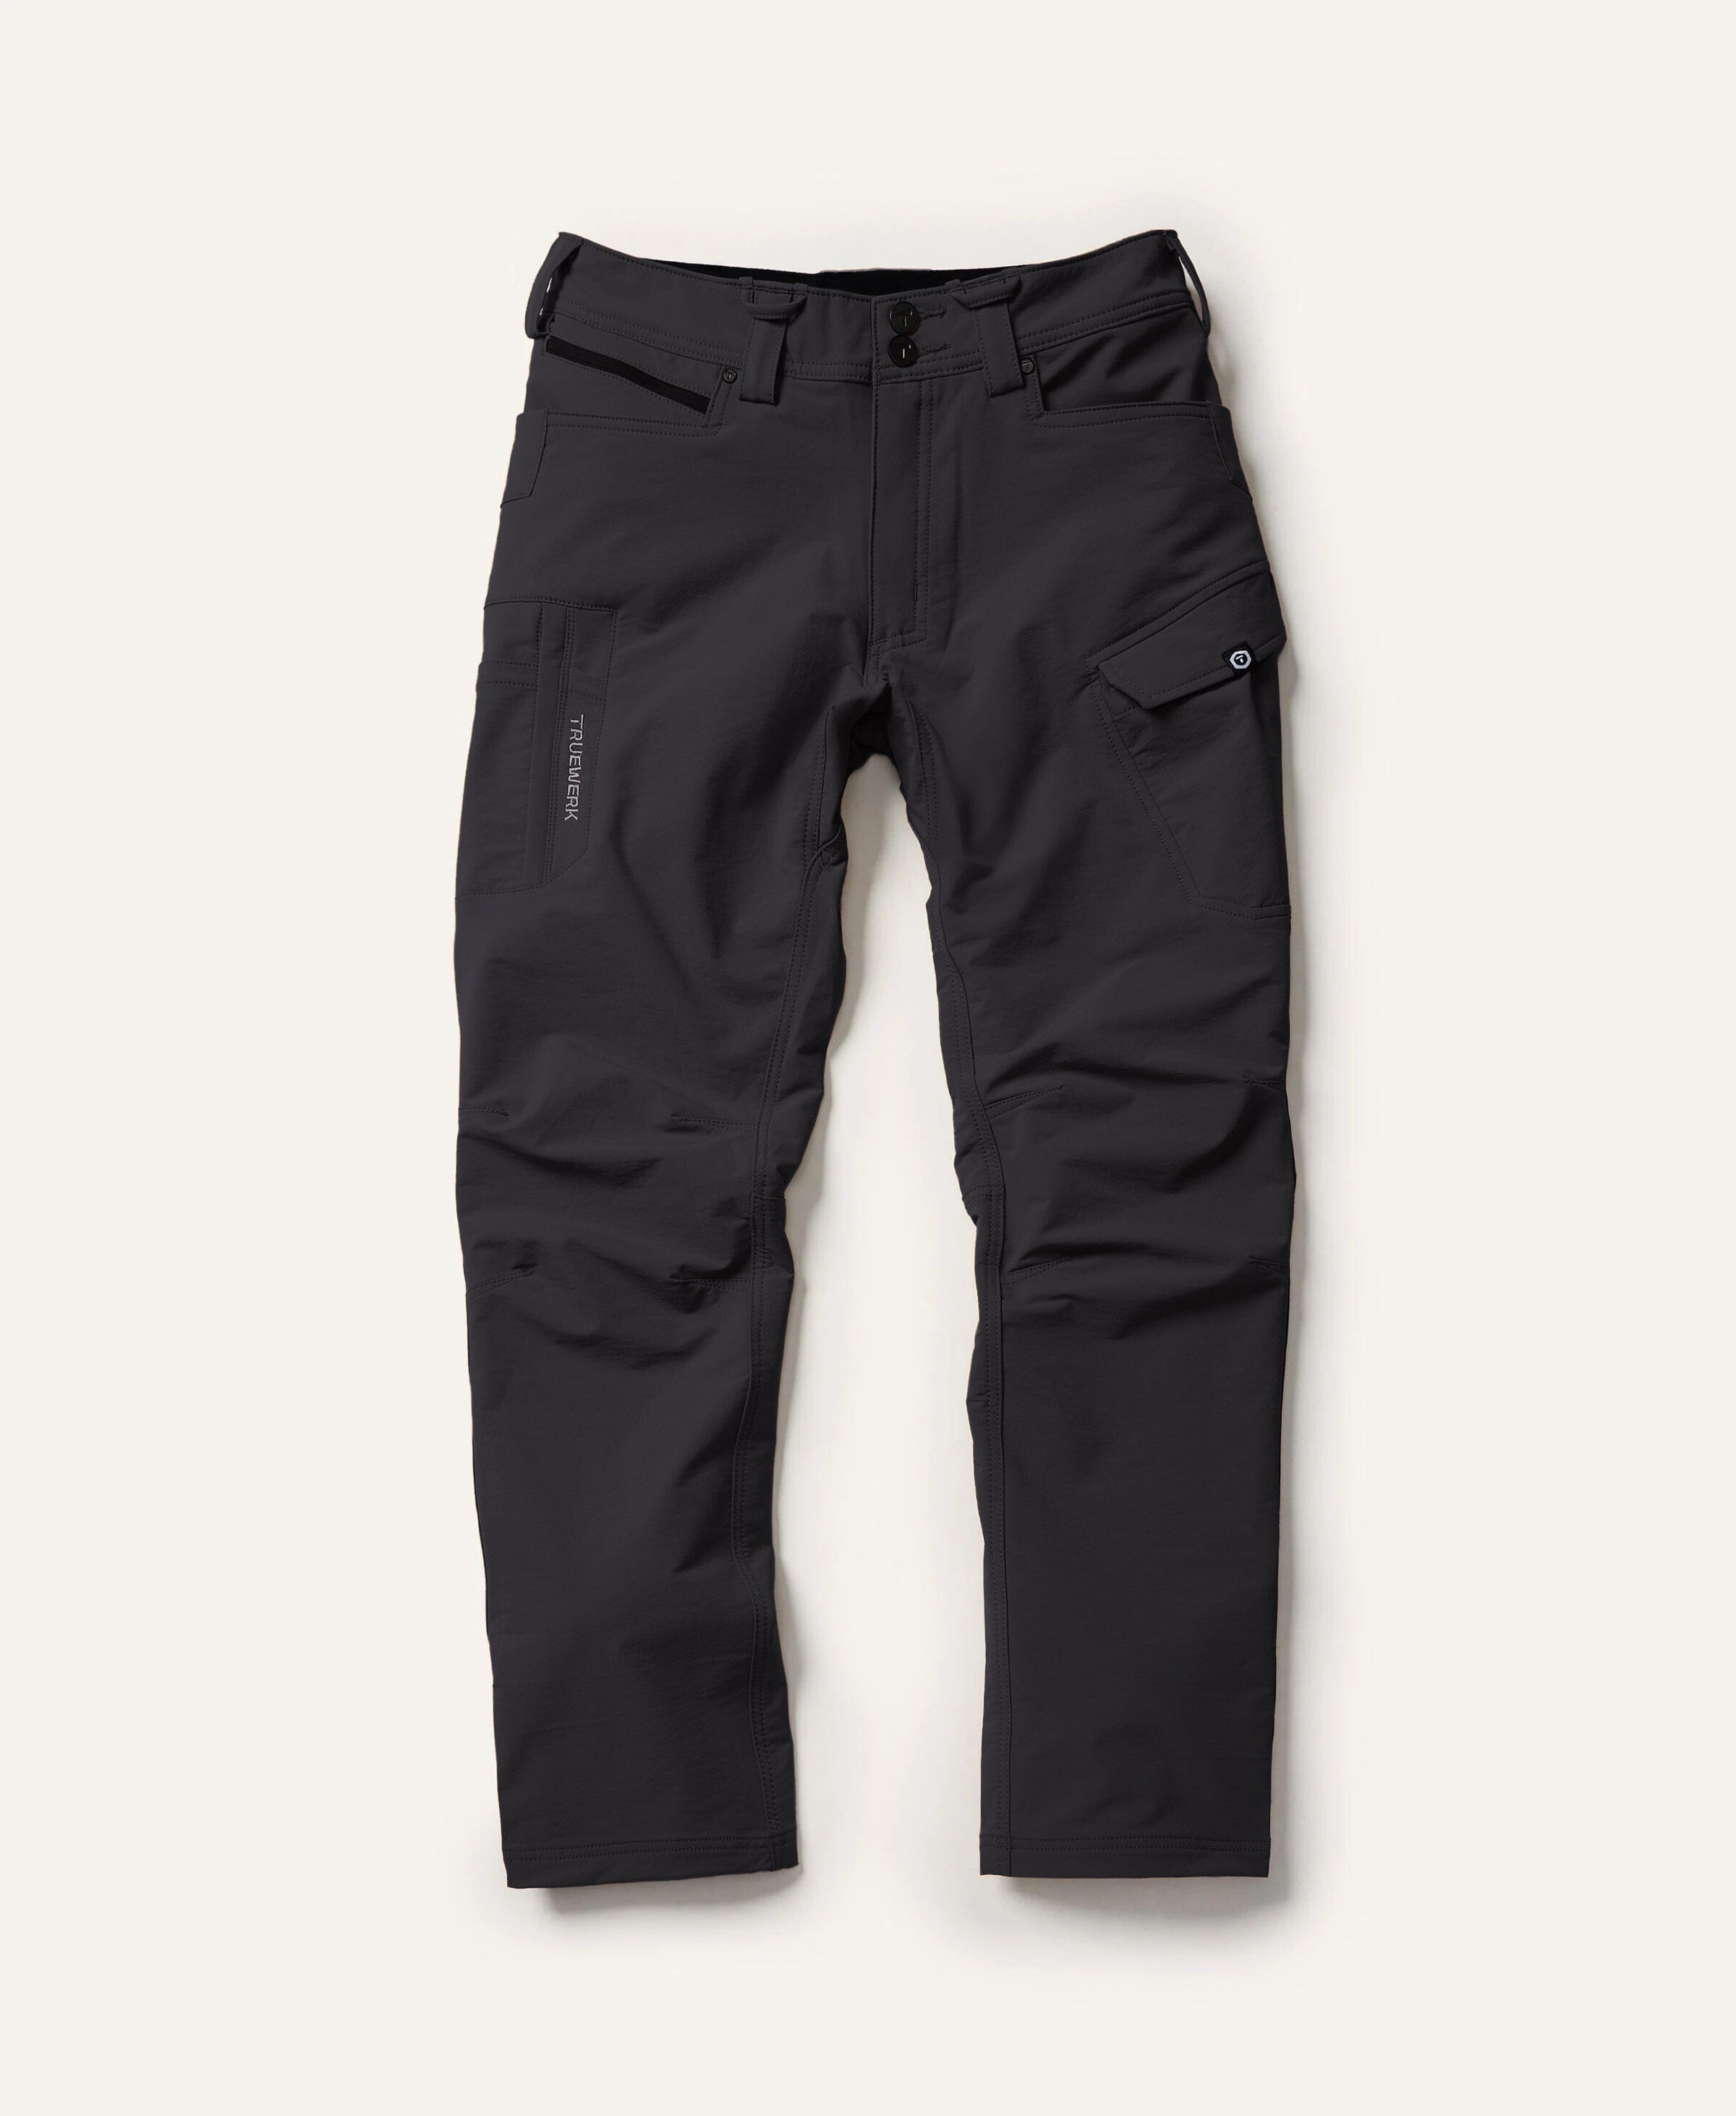 TRUEWERK Pants, Men's Workwear Pants